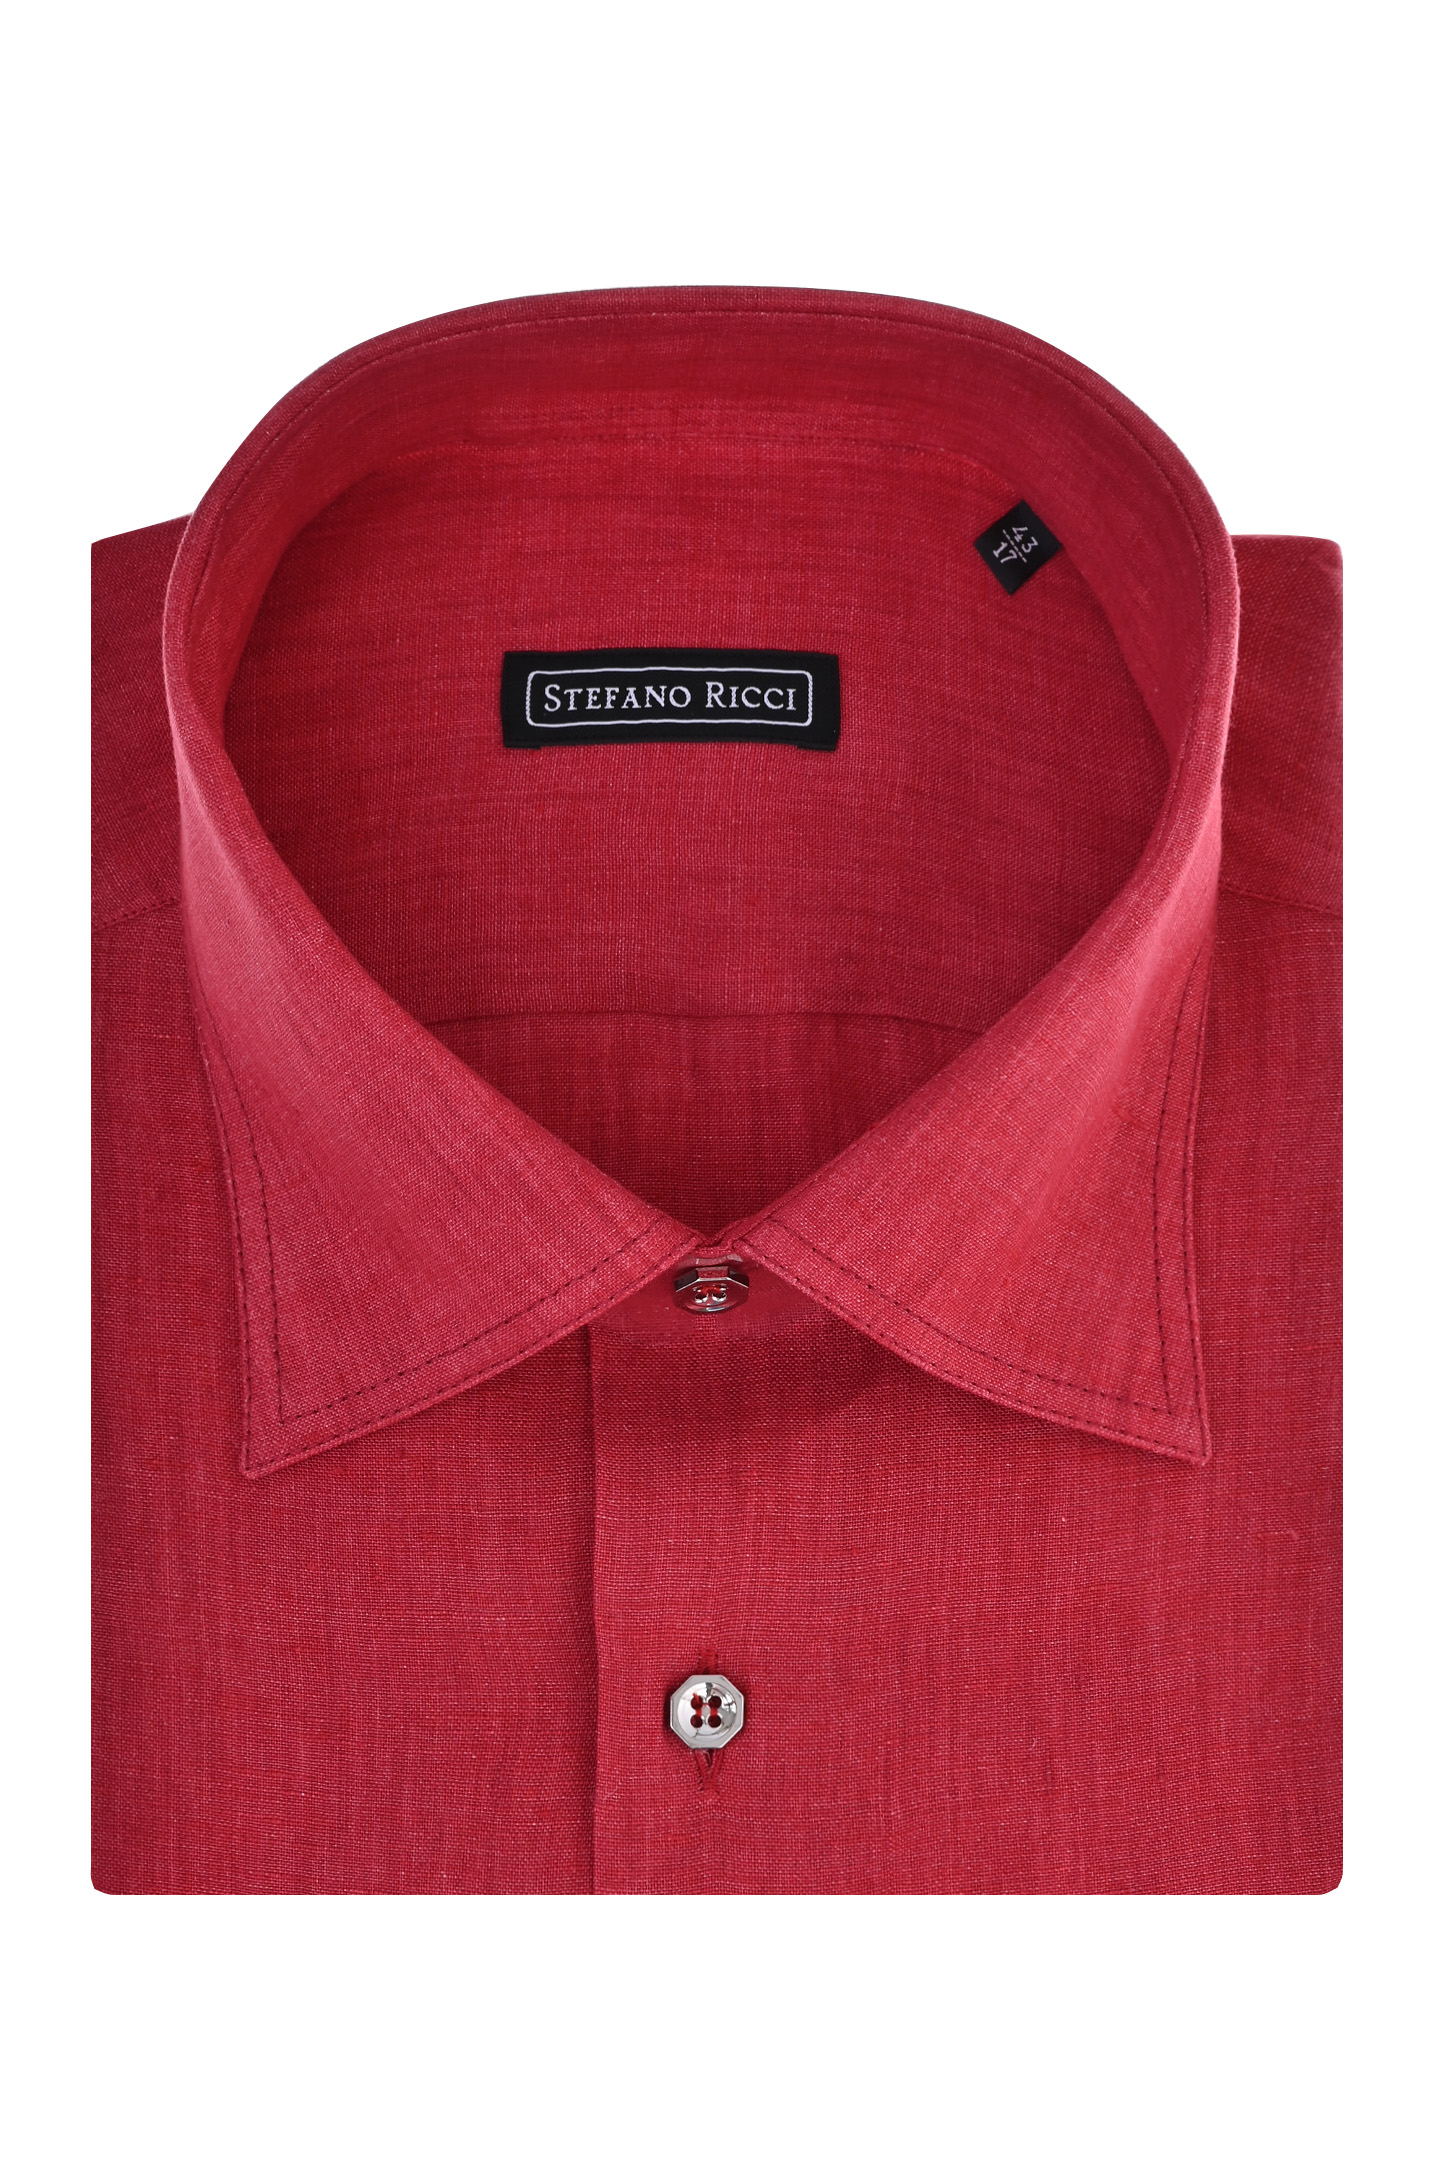 Рубашка STEFANO RICCI MC006031 L1180, цвет: Красный, Мужской